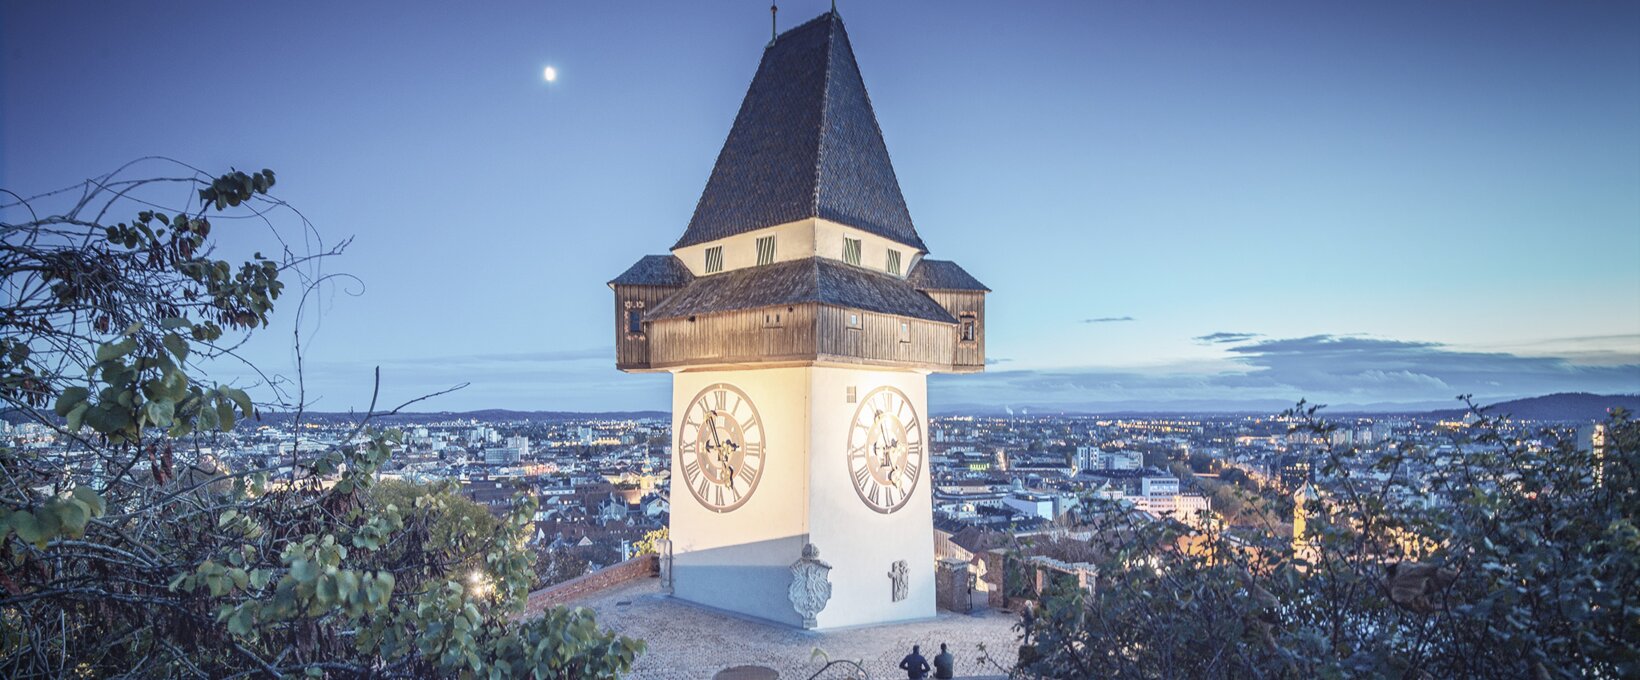 Uhrturm bei Nacht | Graz